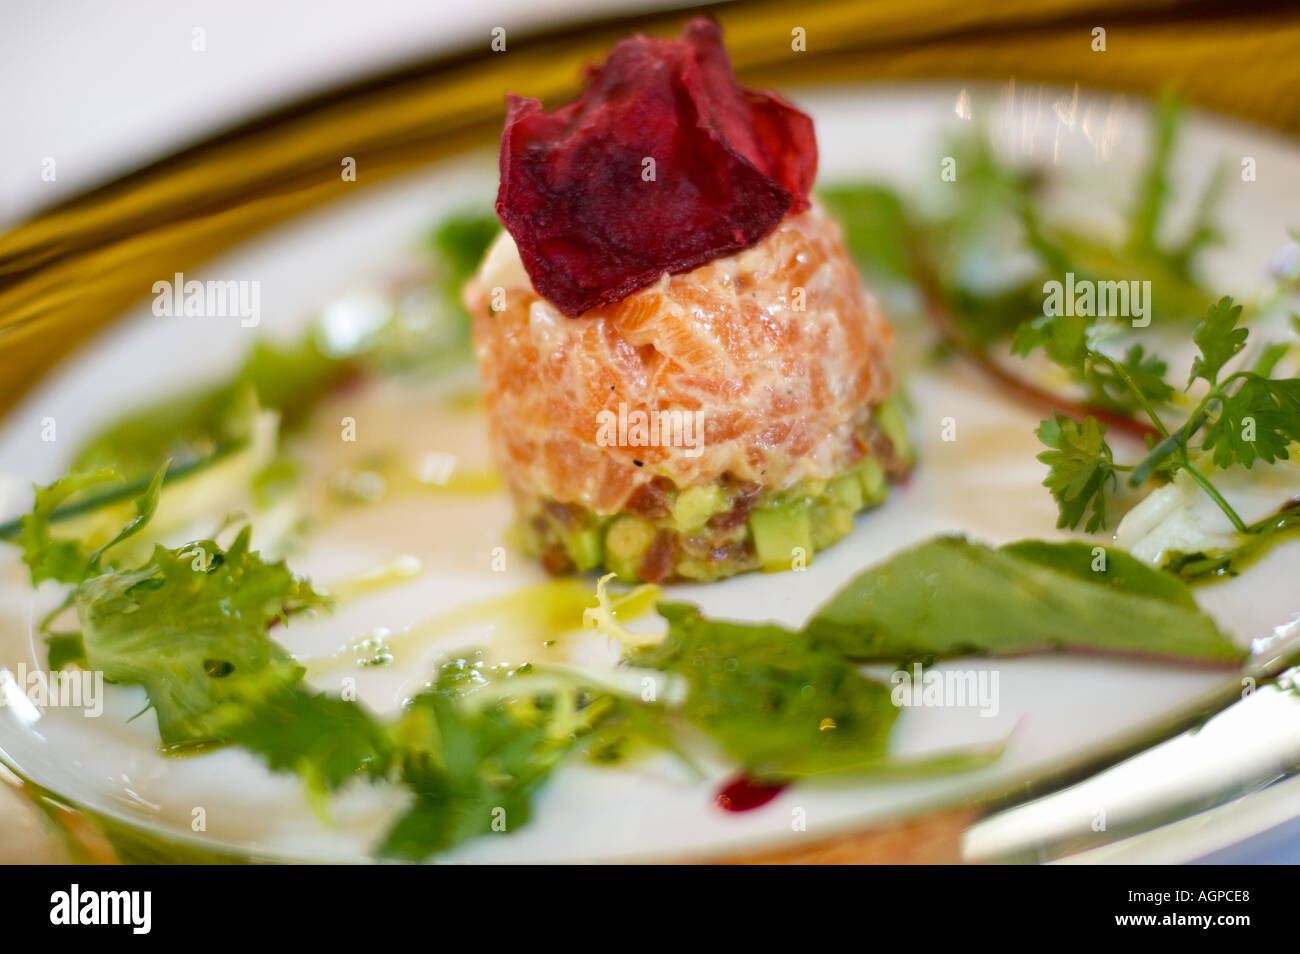 Buena comida - Terrina de Salmón starter en una placa blanca con borde de oro Foto de stock